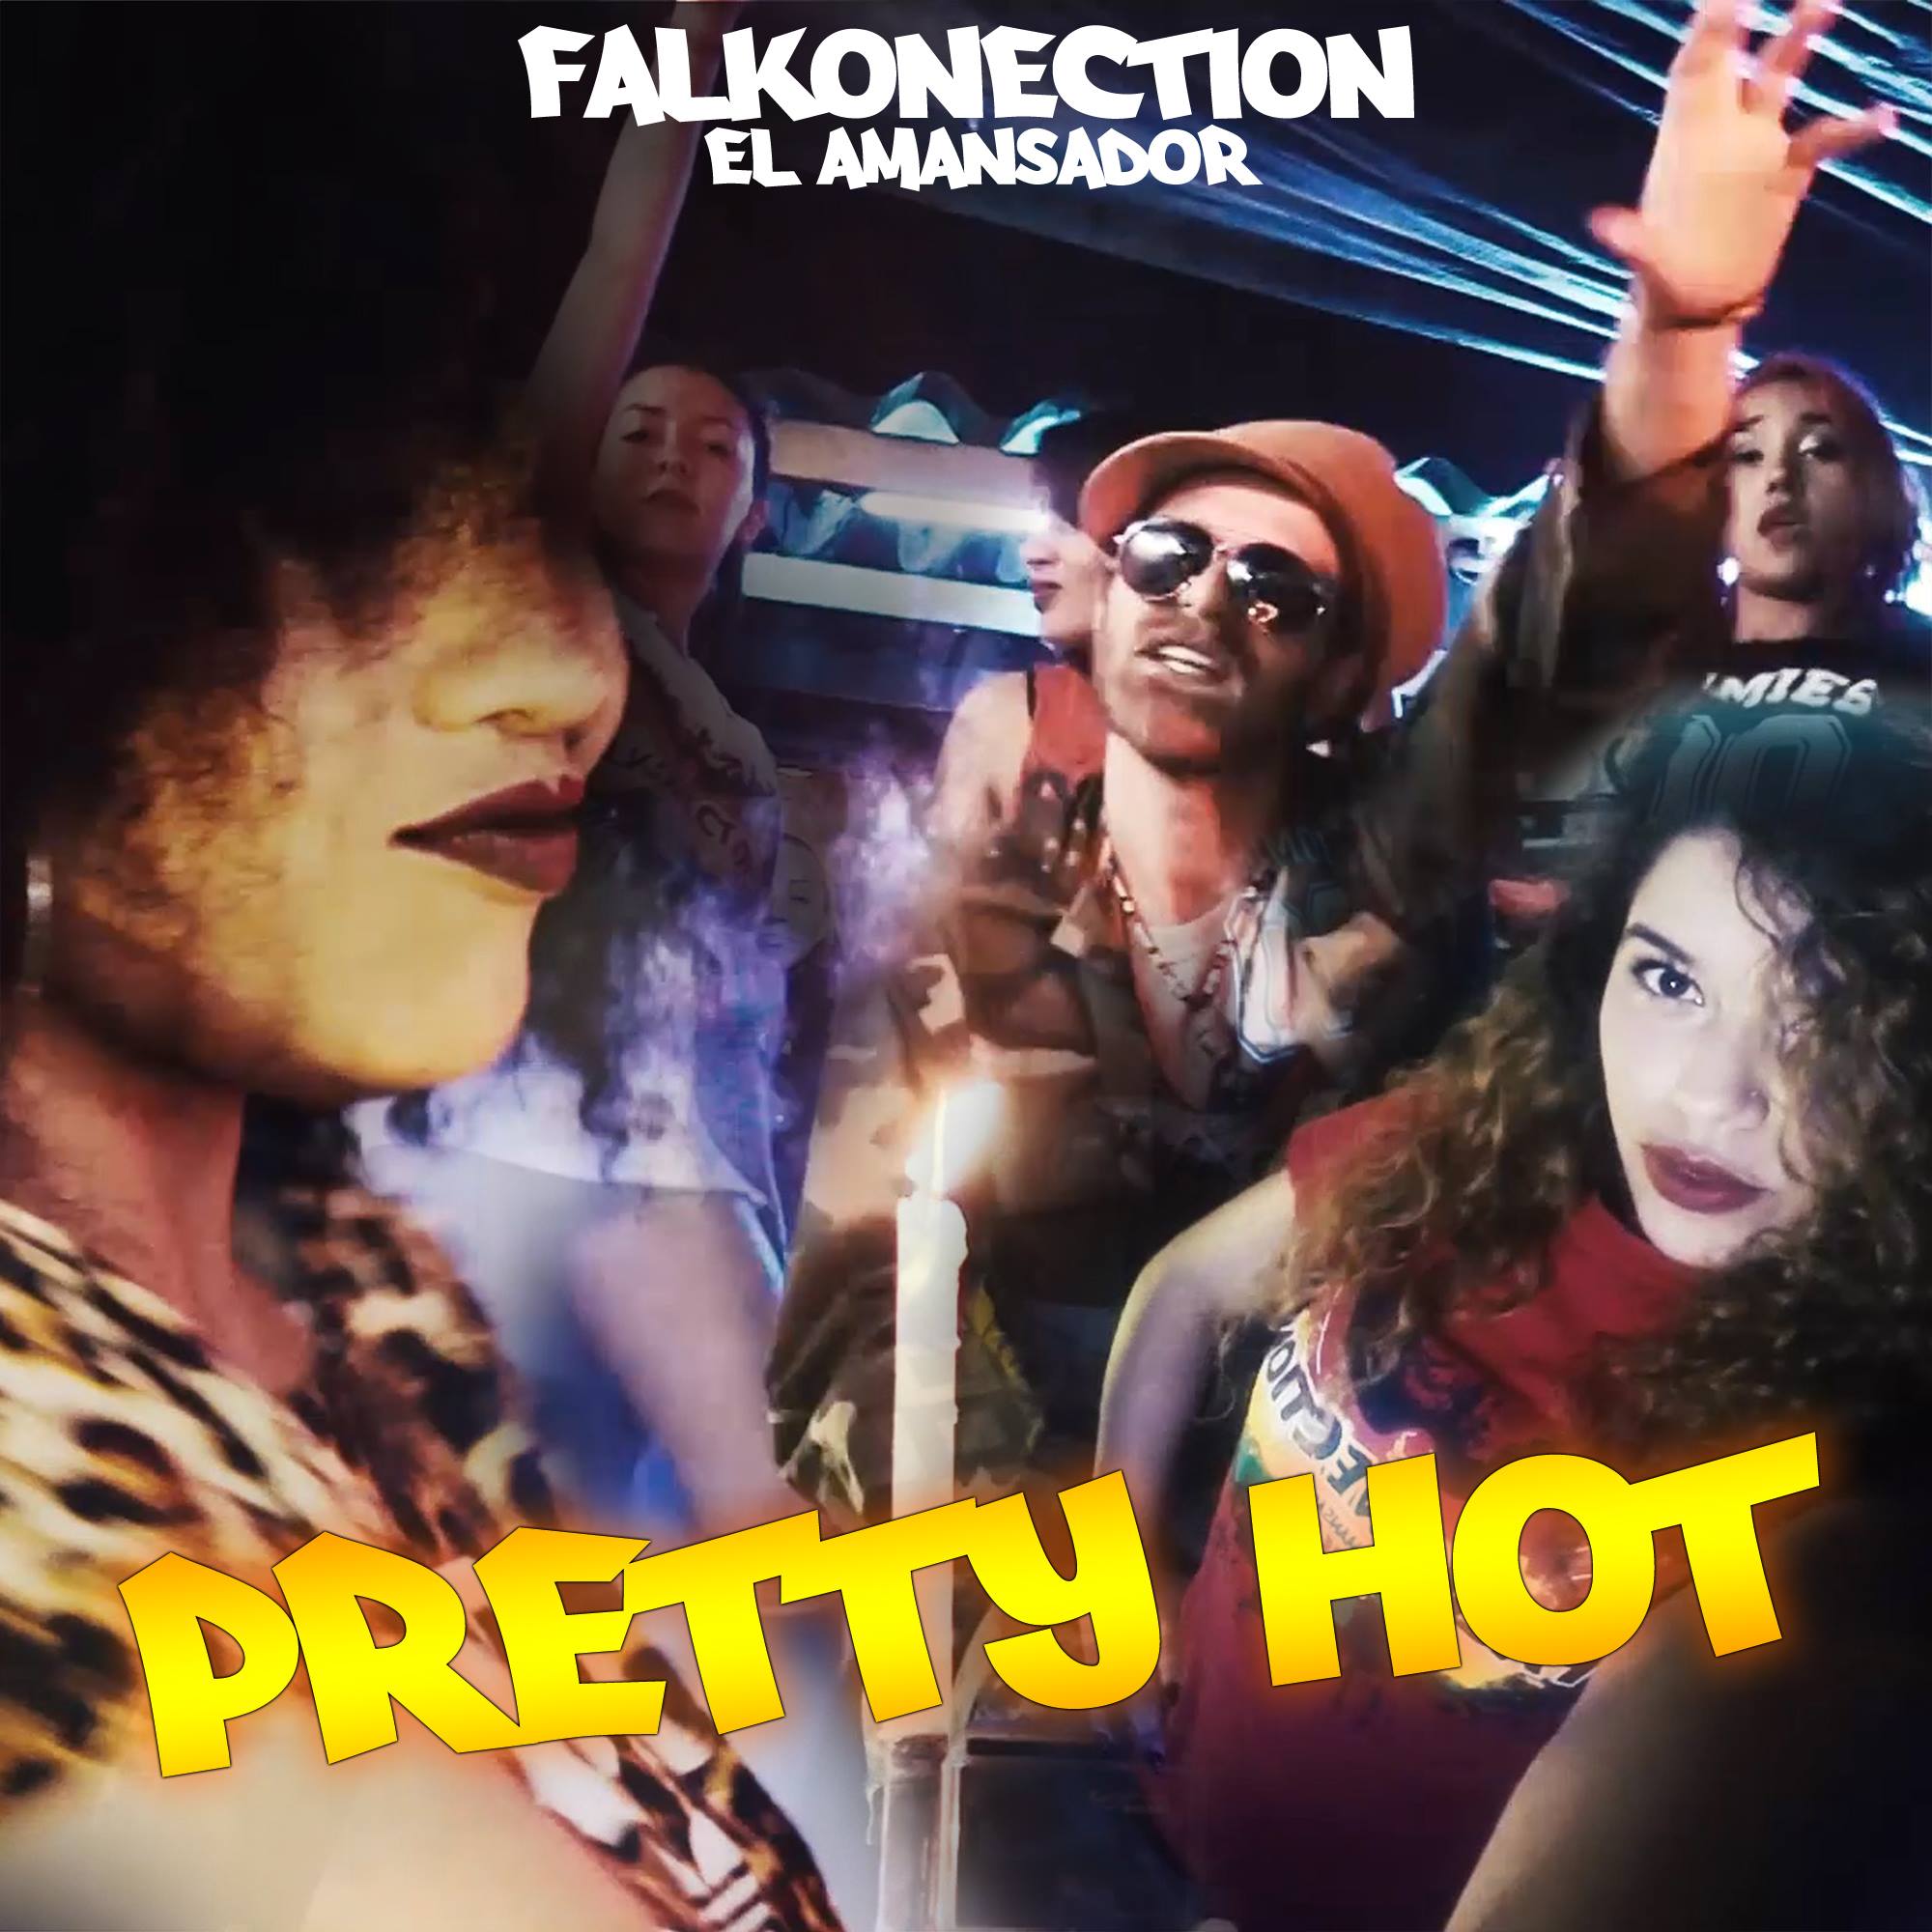 Falkonection el Amansador veröffentlicht neues Dancehall Video “Pretty Hot”